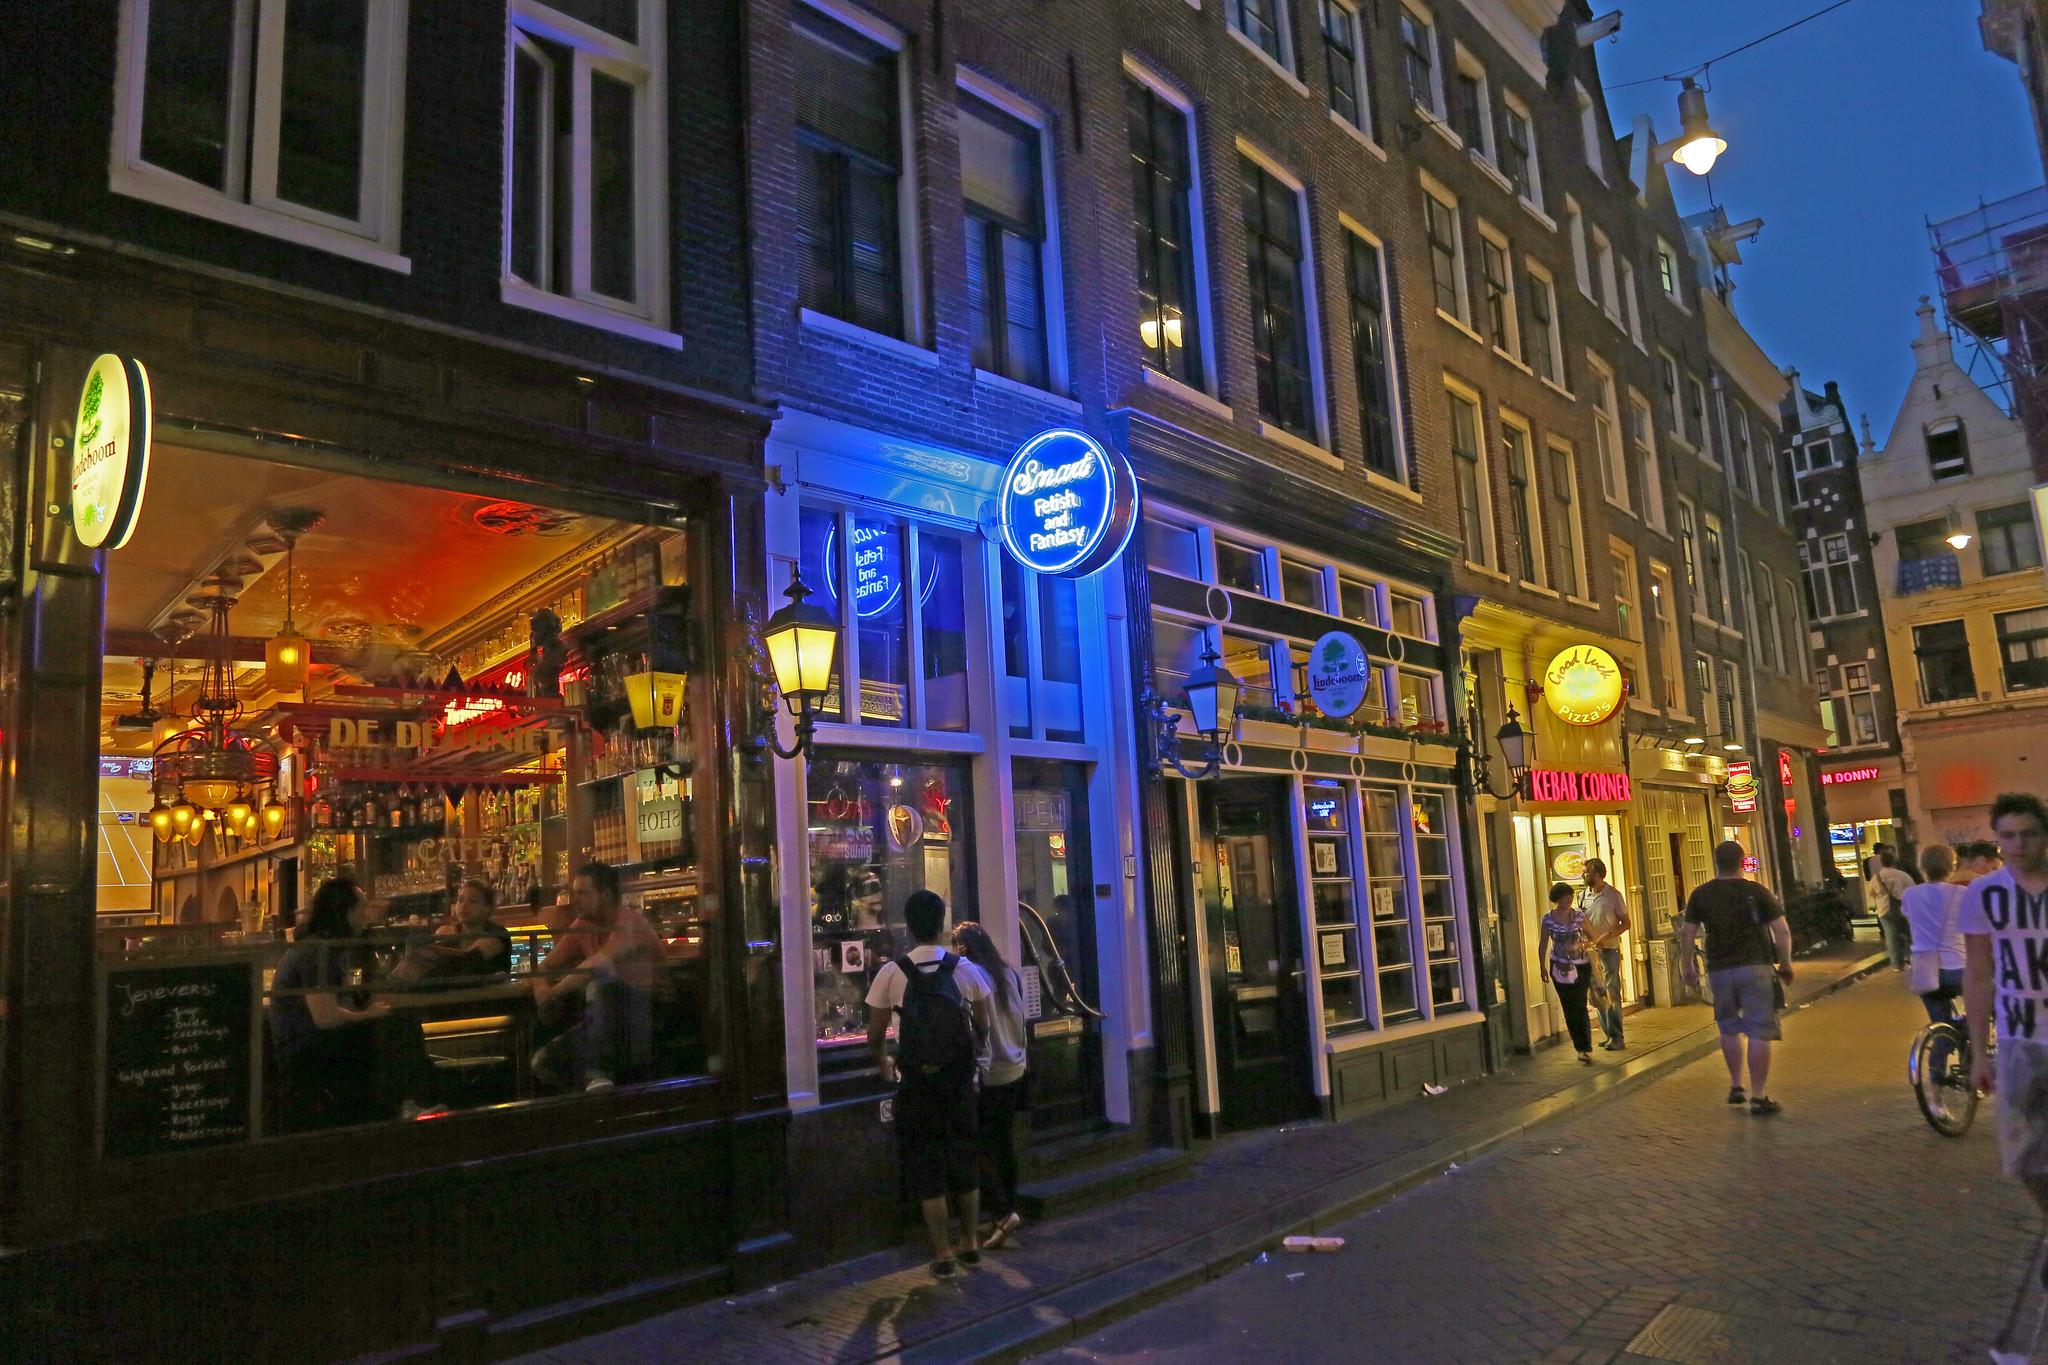 αμστερνταμ αξιοθέατα τουριστες σε βόλτα με καραβακι στα κανάλια της πόλης